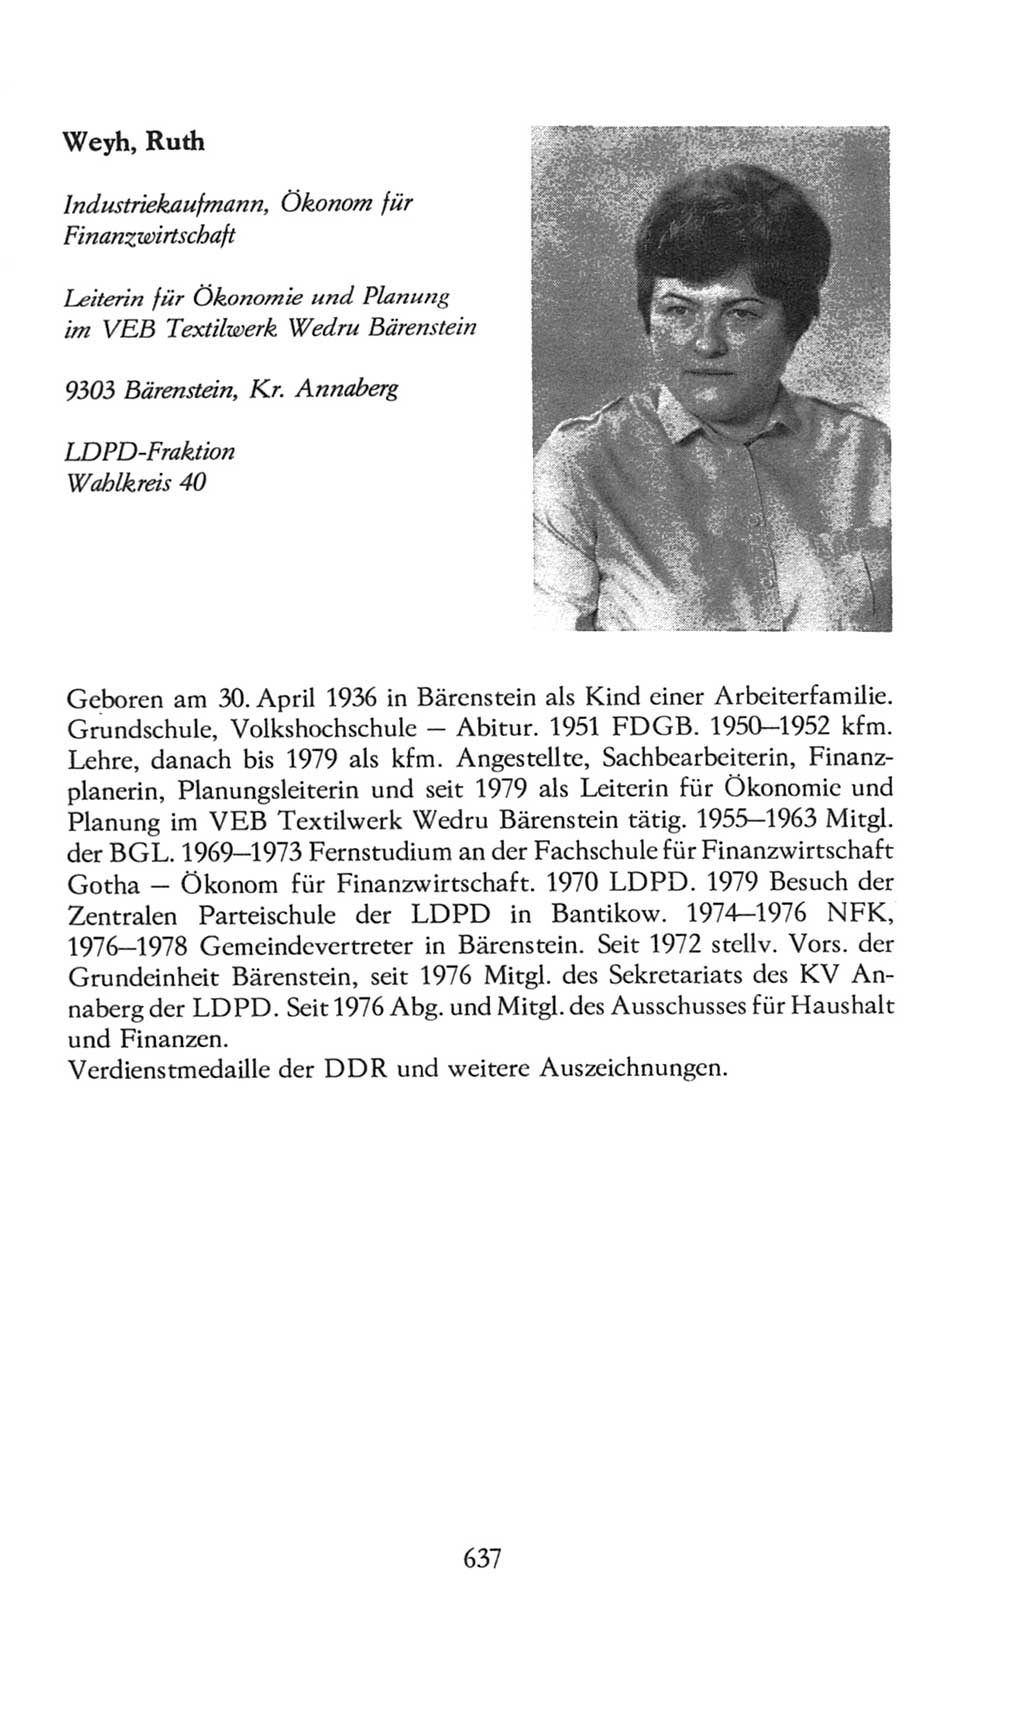 Volkskammer (VK) der Deutschen Demokratischen Republik (DDR), 8. Wahlperiode 1981-1986, Seite 637 (VK. DDR 8. WP. 1981-1986, S. 637)